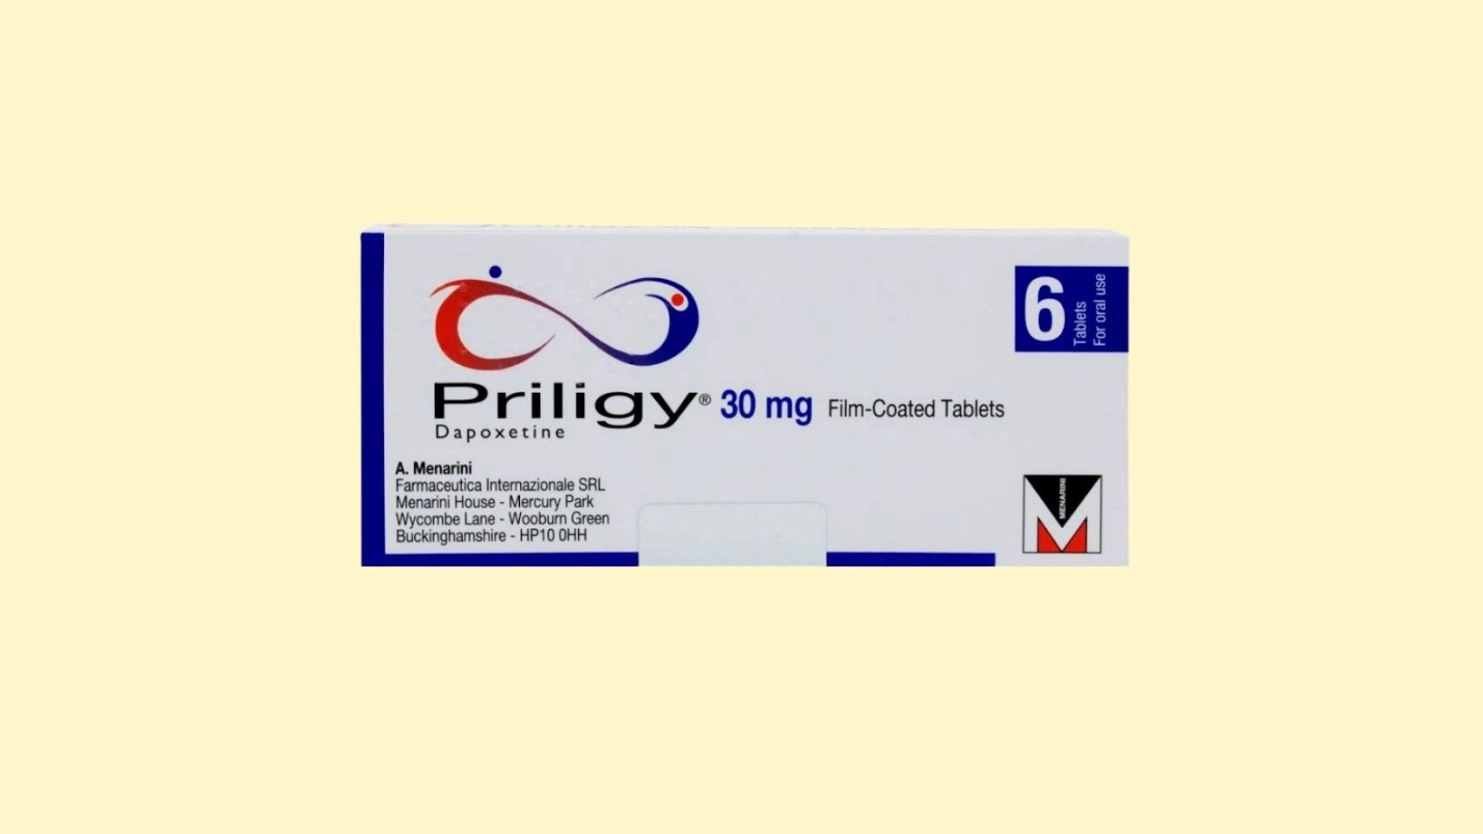 Priligy 30 mg -  E-recepta - recepta online z konsultacją | cena ,dawkowanie, przeciwwskazania